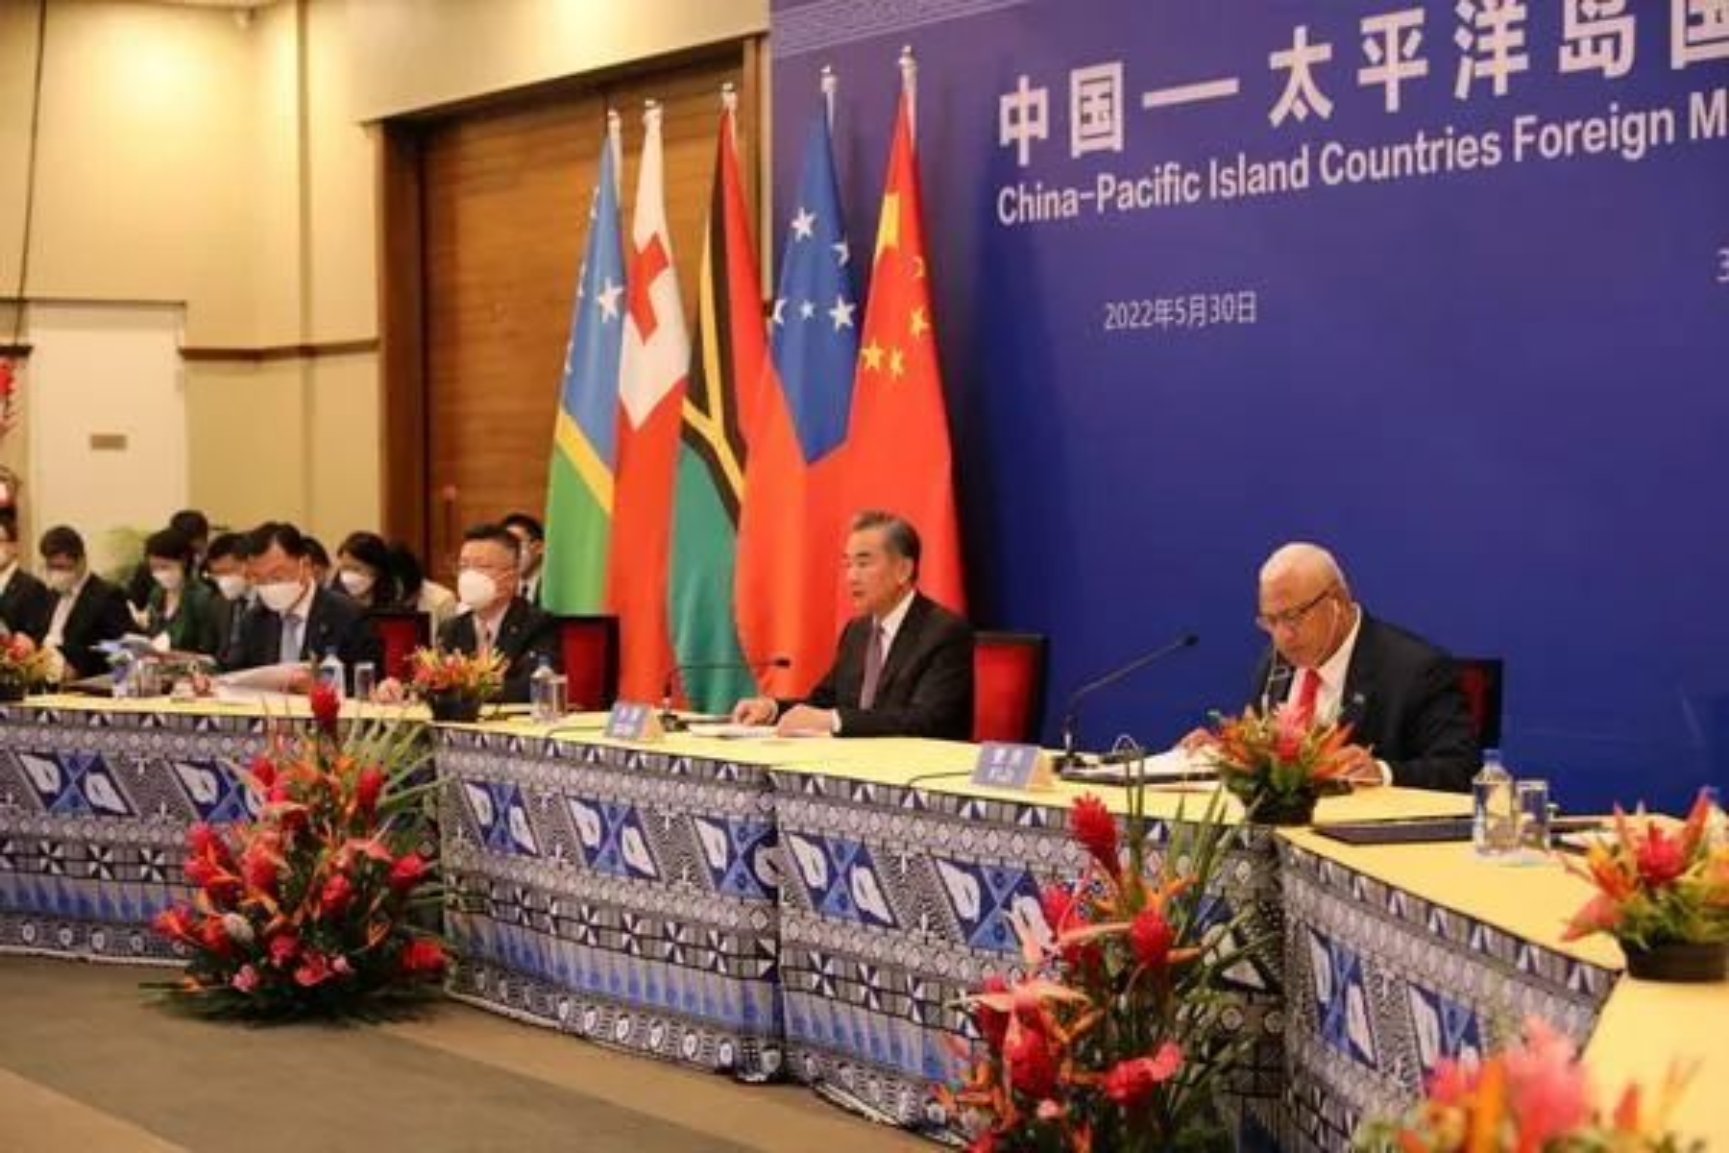 中国-太平洋岛国外长会议现场。图源：GJ